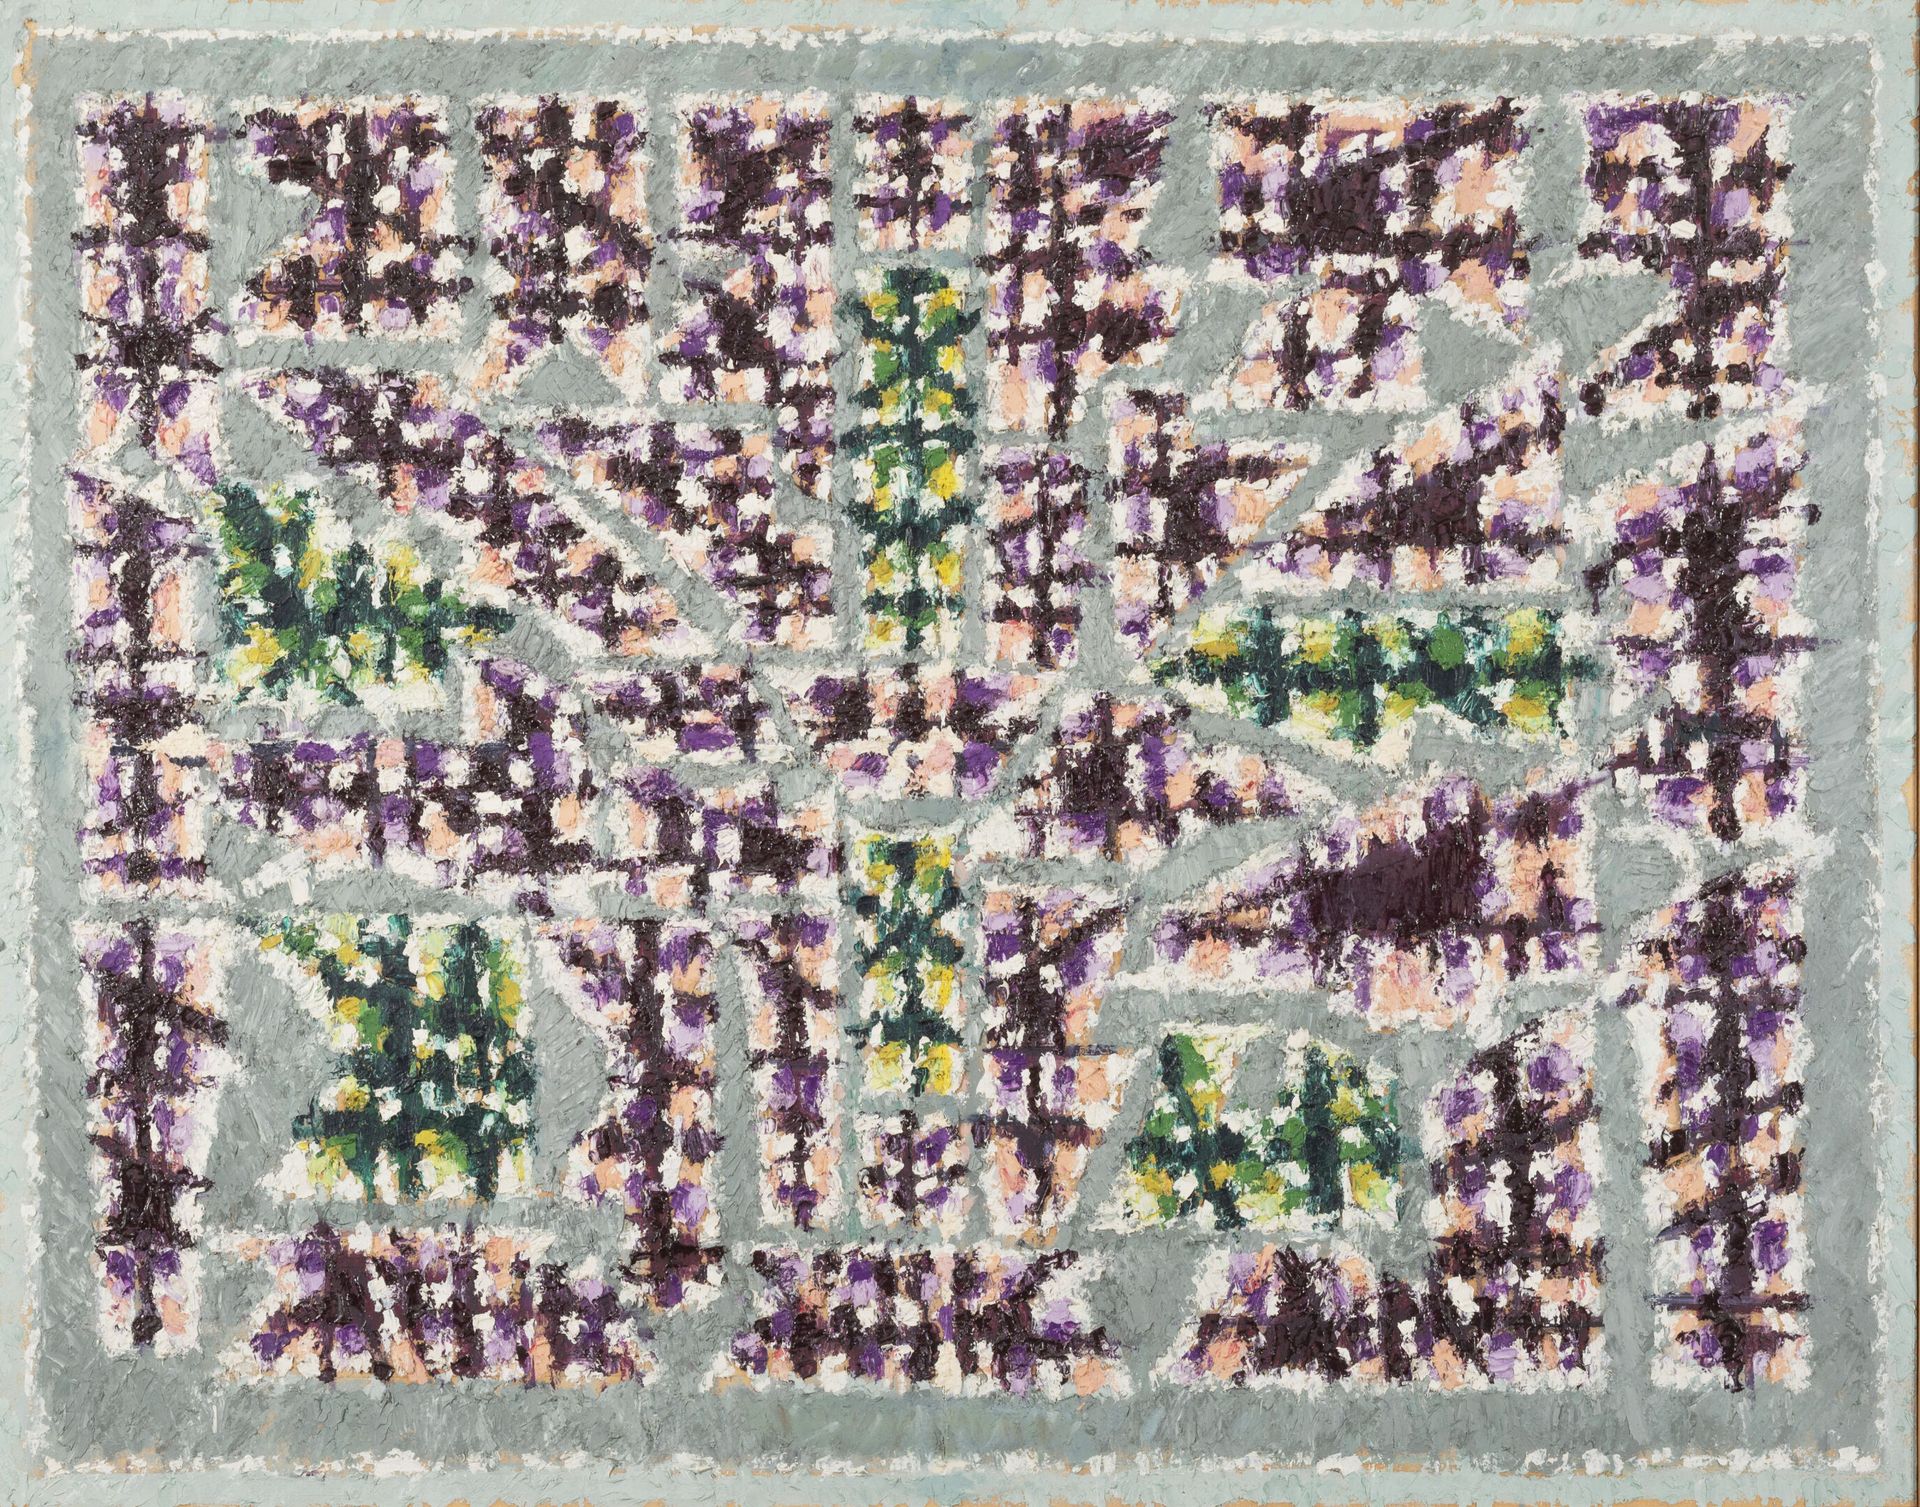 Jean LEGROS (1917-1981) 无题》，约1960年。
纸板上的油彩。
无符号。
85 x 107.5厘米。
边缘处有裂纹和小的损失。